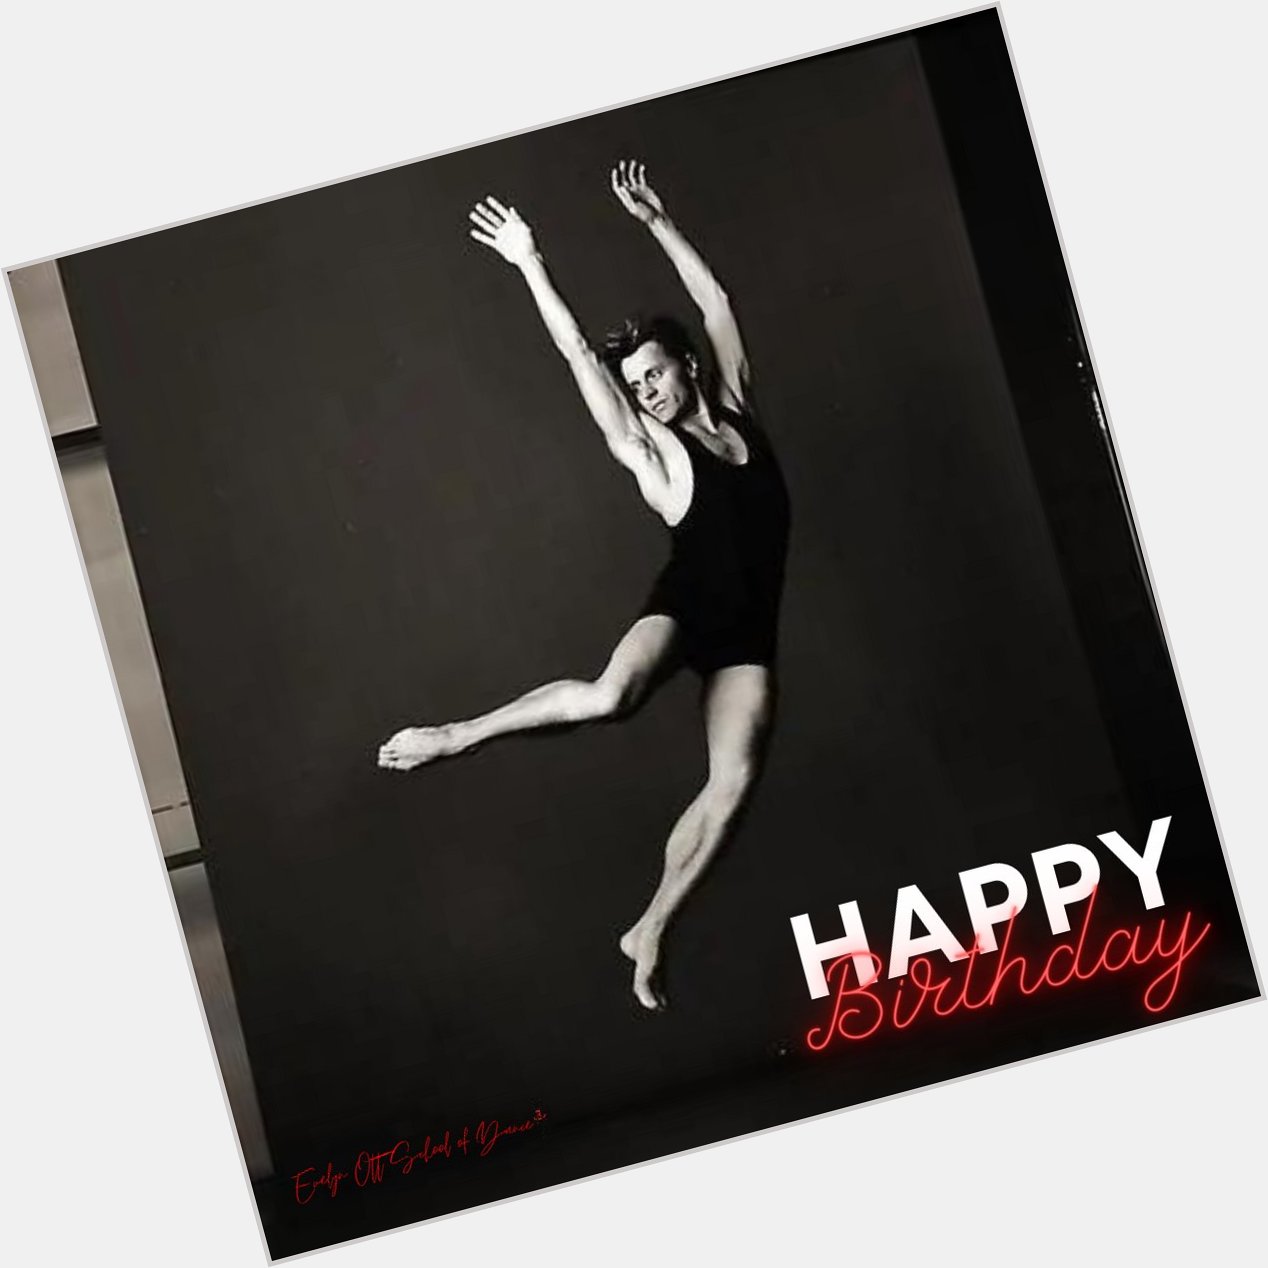 Happy Birthday to a legend in the Ballet world - Mikhail Baryshnikov!  